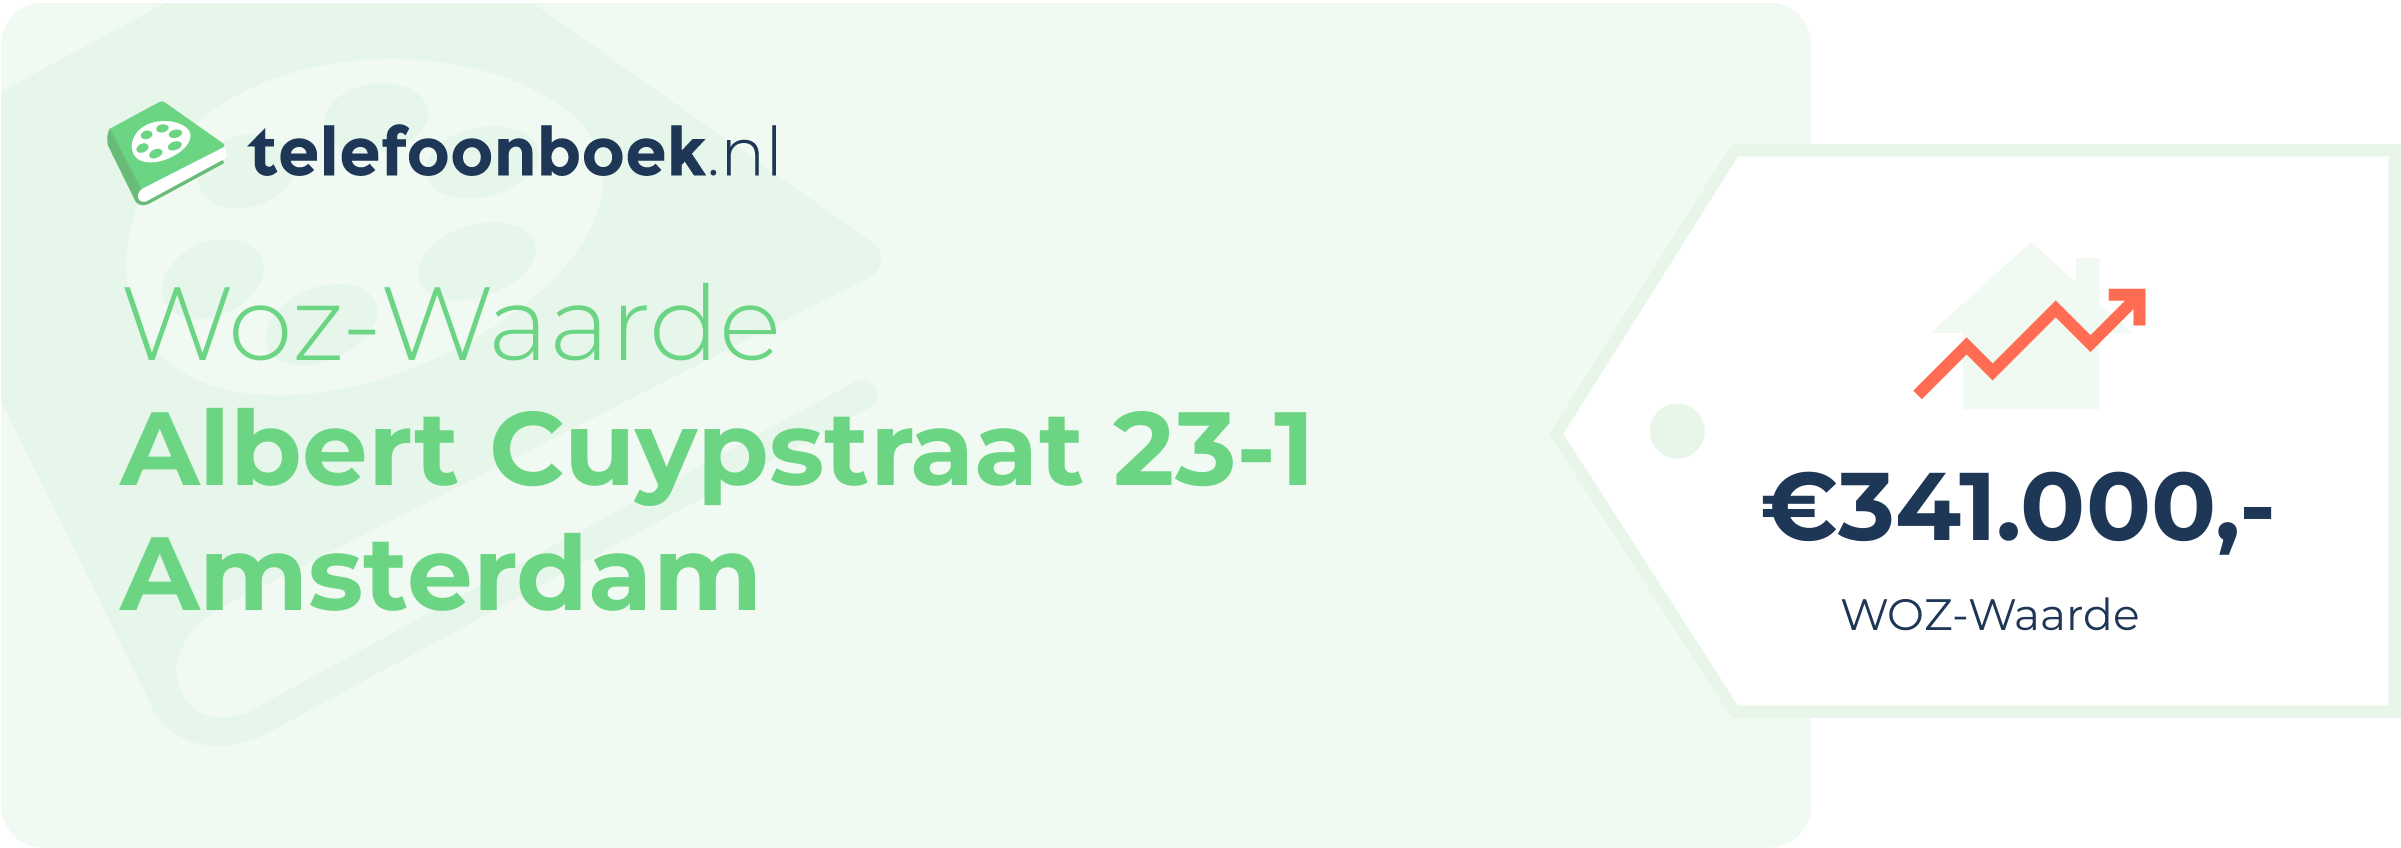 WOZ-waarde Albert Cuypstraat 23-1 Amsterdam